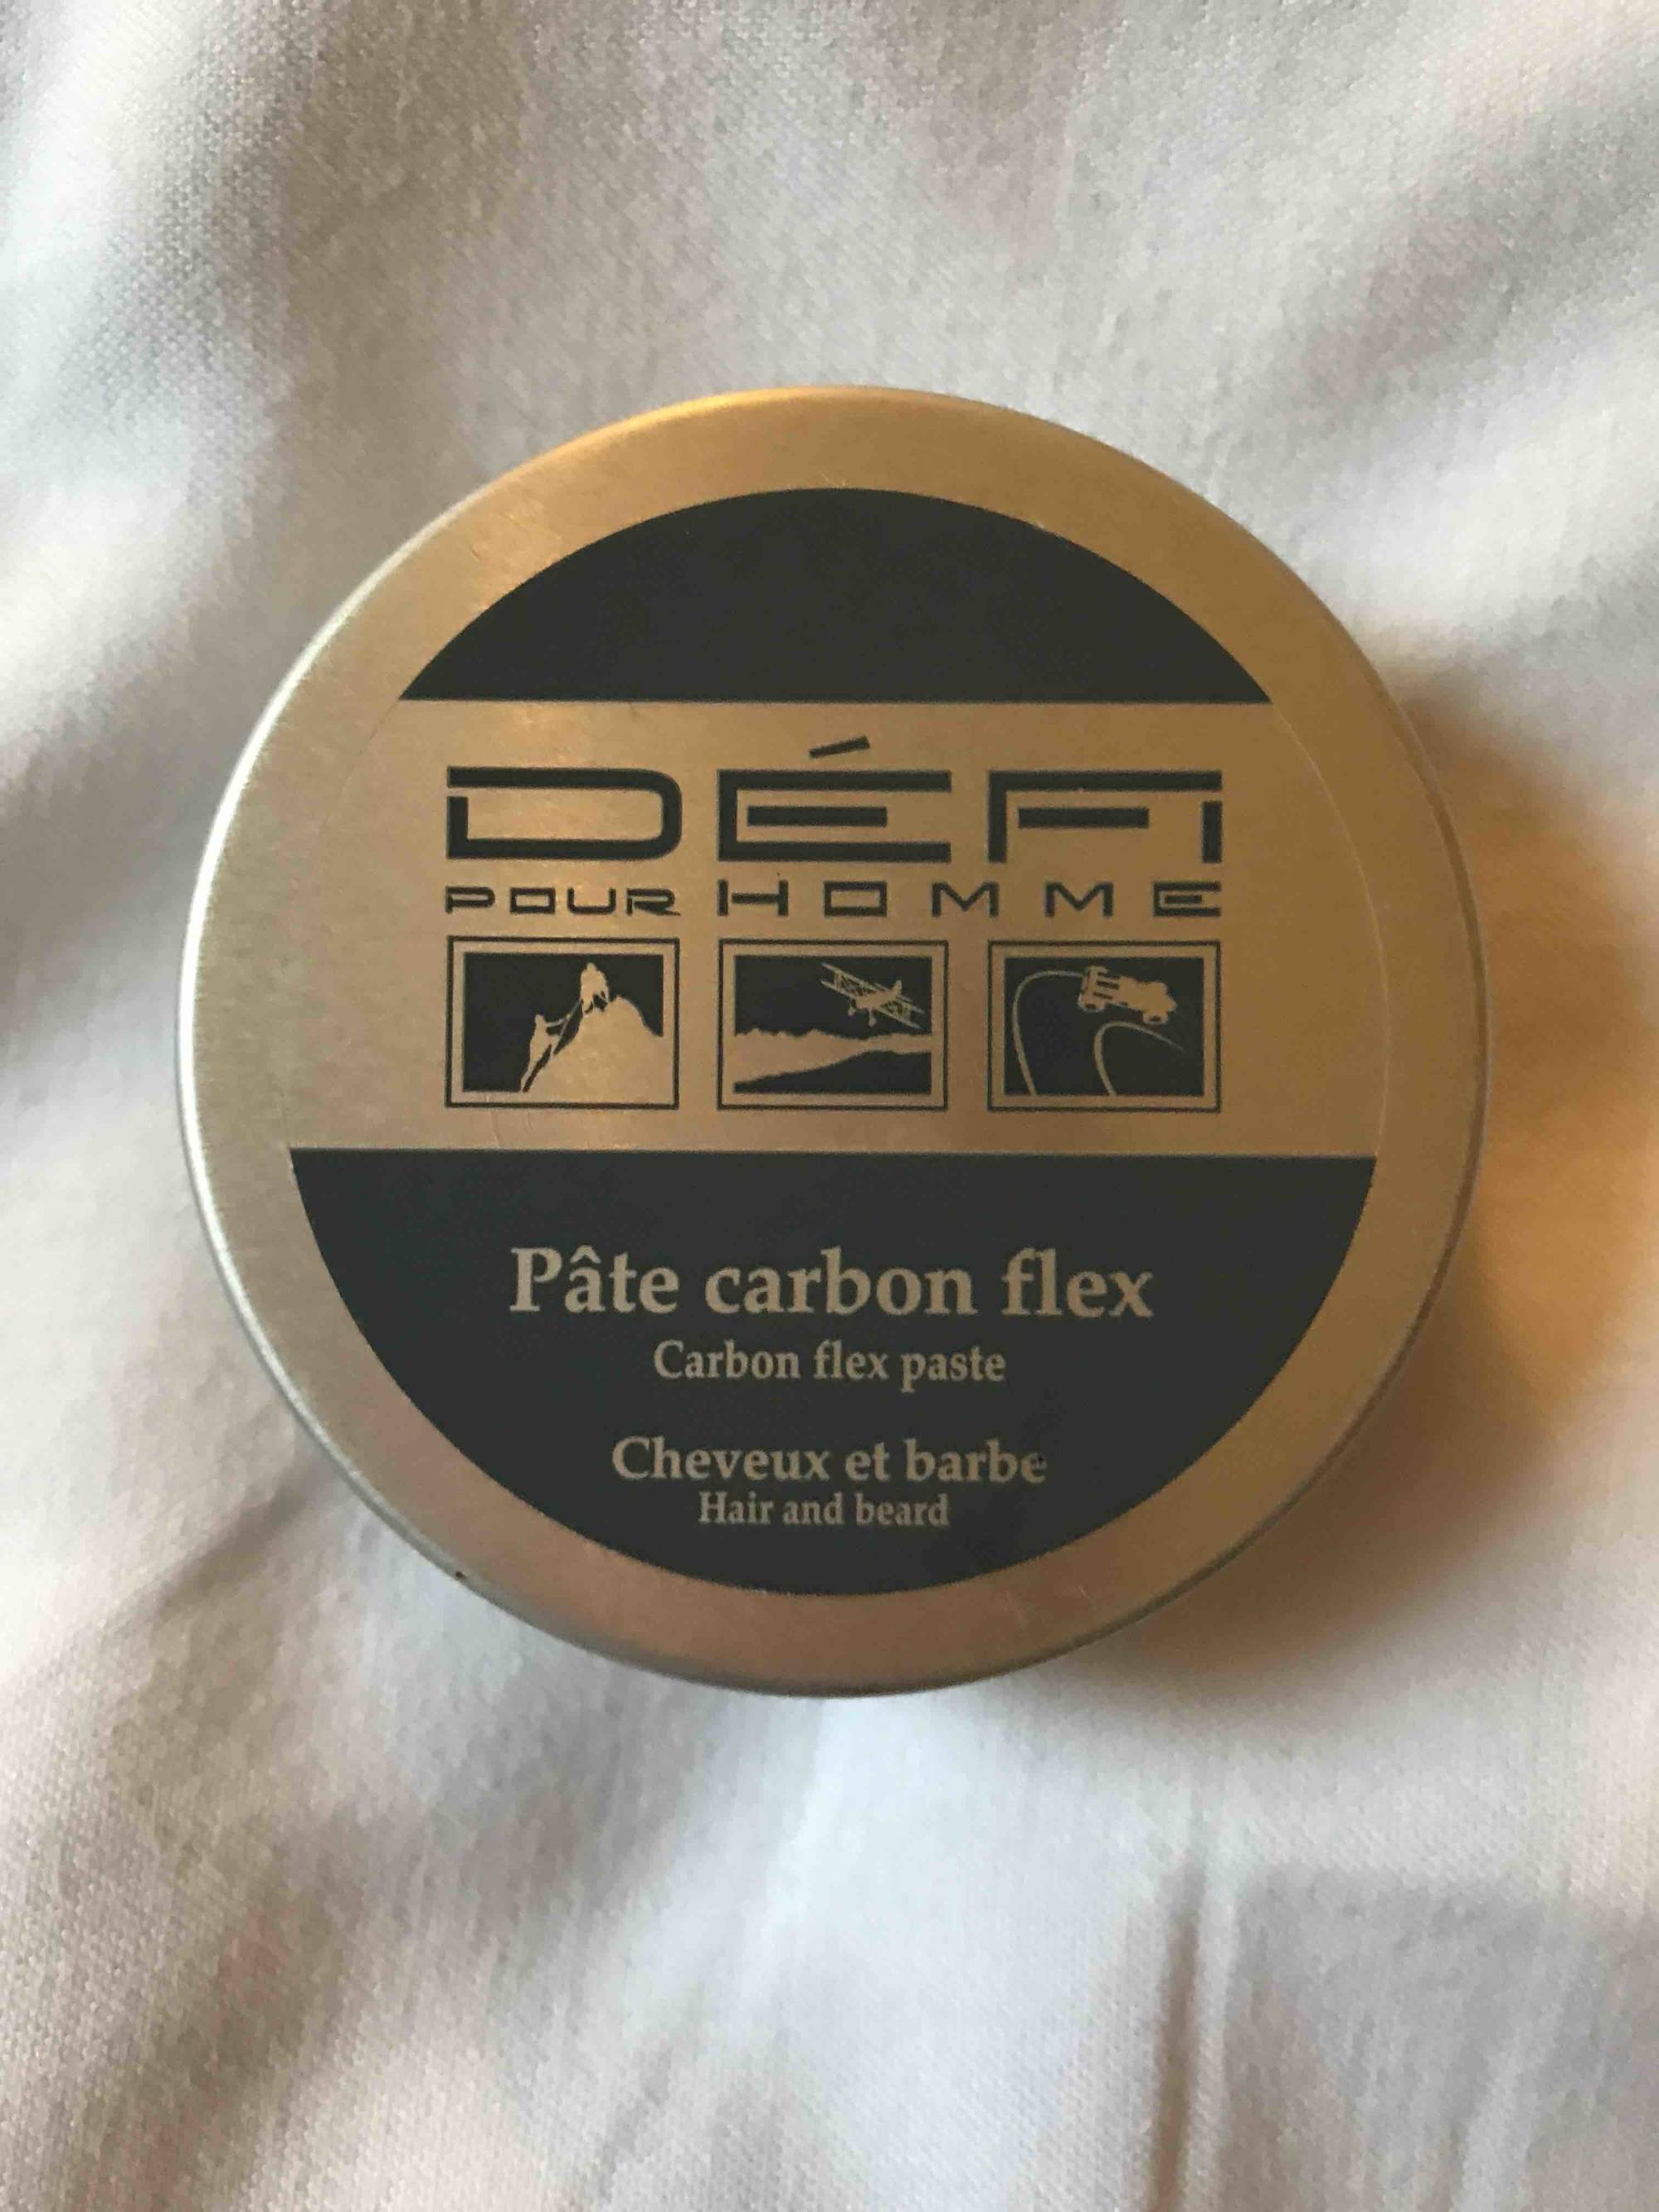 DÉFI POUR HOMME - Pâte carbon flex - Cheveux et barbe